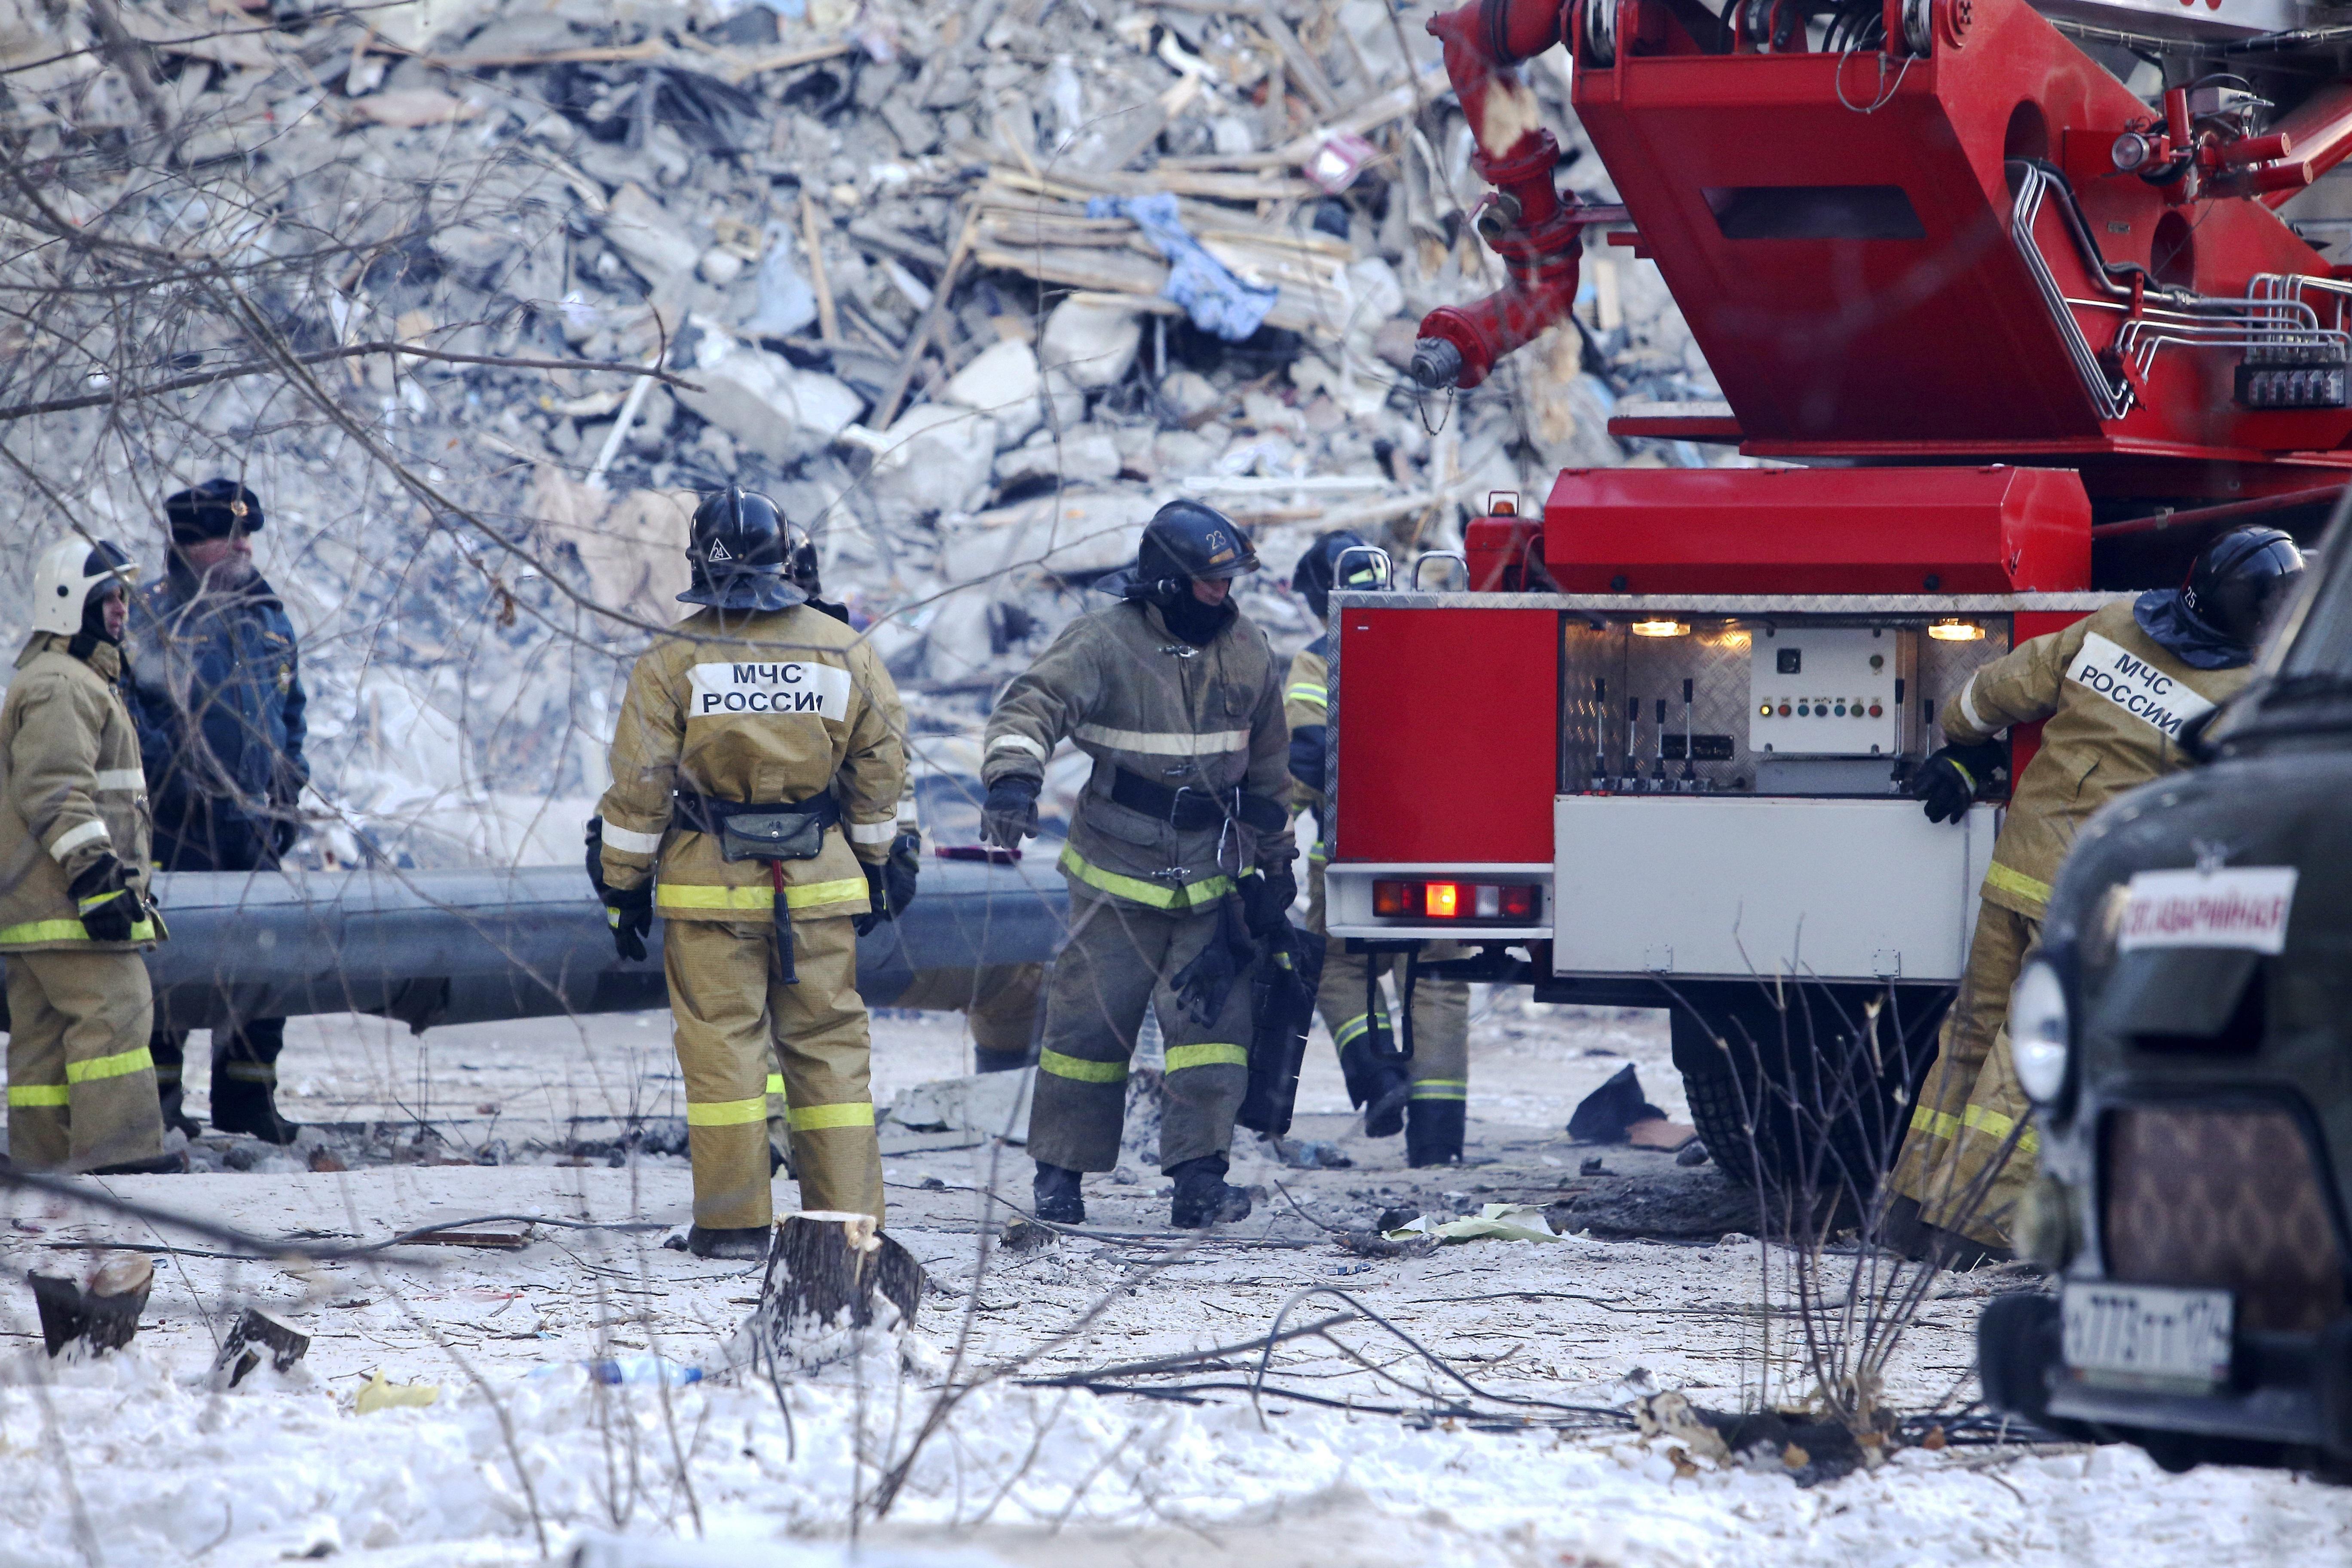 Rusyadaki gaz patlamasında ölü sayısı 13e çıktı